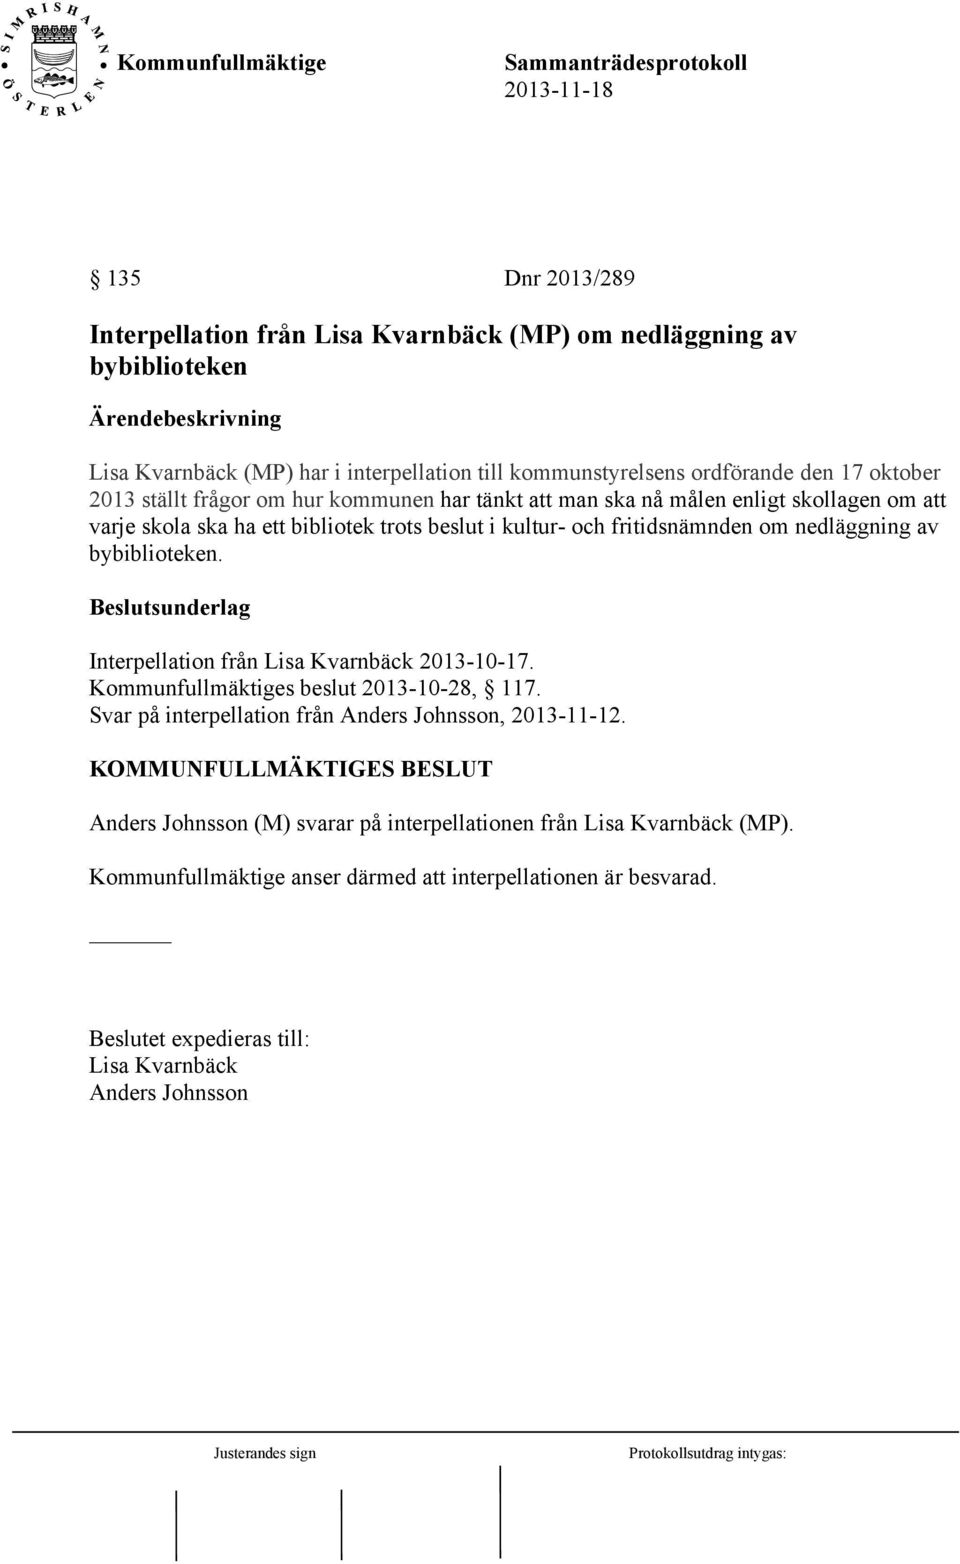 bybiblioteken. Beslutsunderlag Interpellation från Lisa Kvarnbäck 2013-10-17. Kommunfullmäktiges beslut 2013-10-28, 117. Svar på interpellation från Anders Johnsson, 2013-11-12.